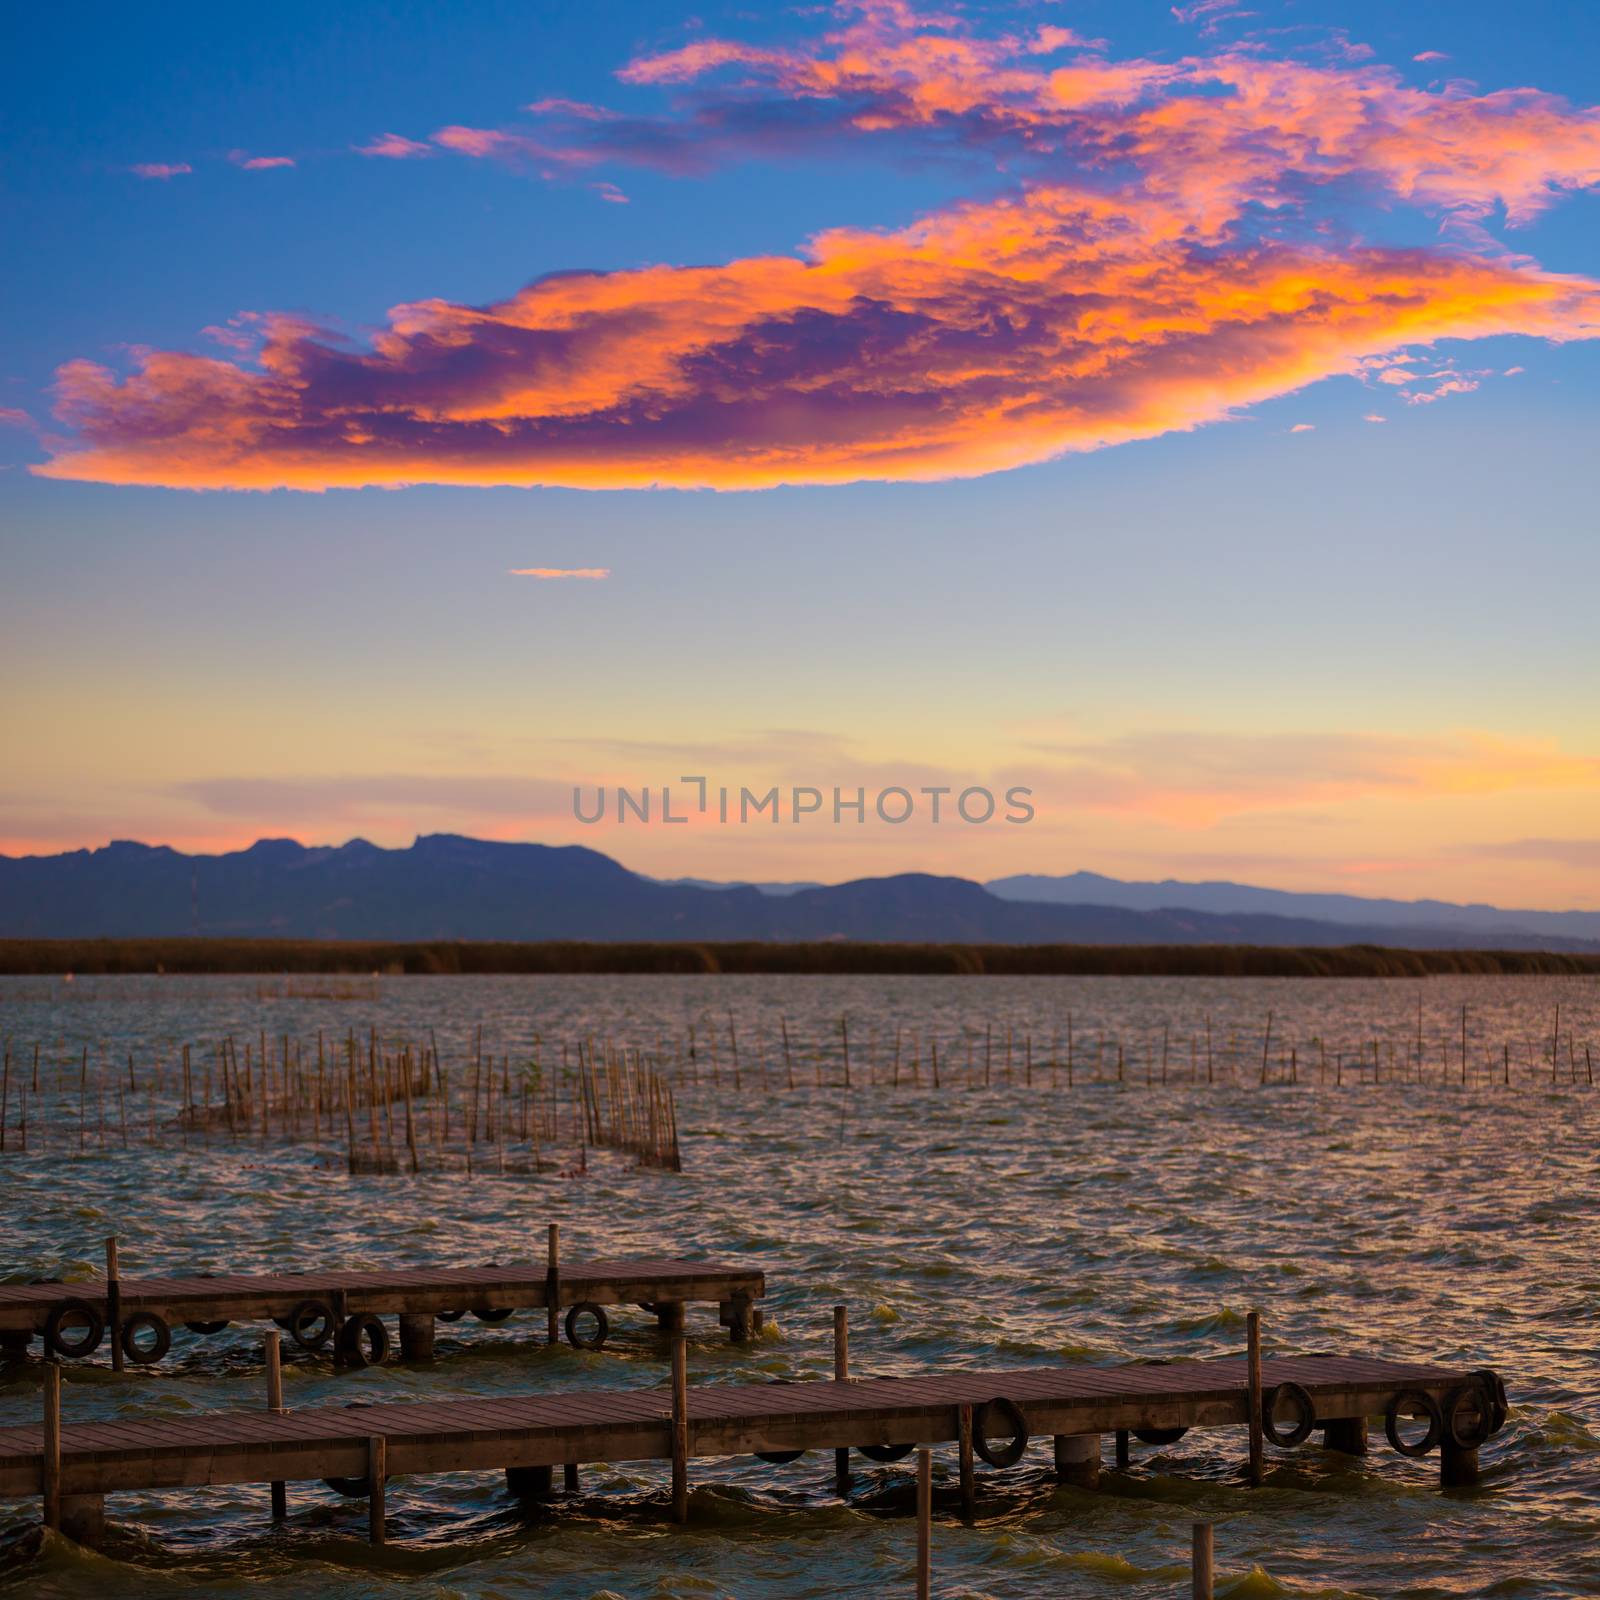 Albufera sunset lake park in Valencia el saler colorful sky of Spain